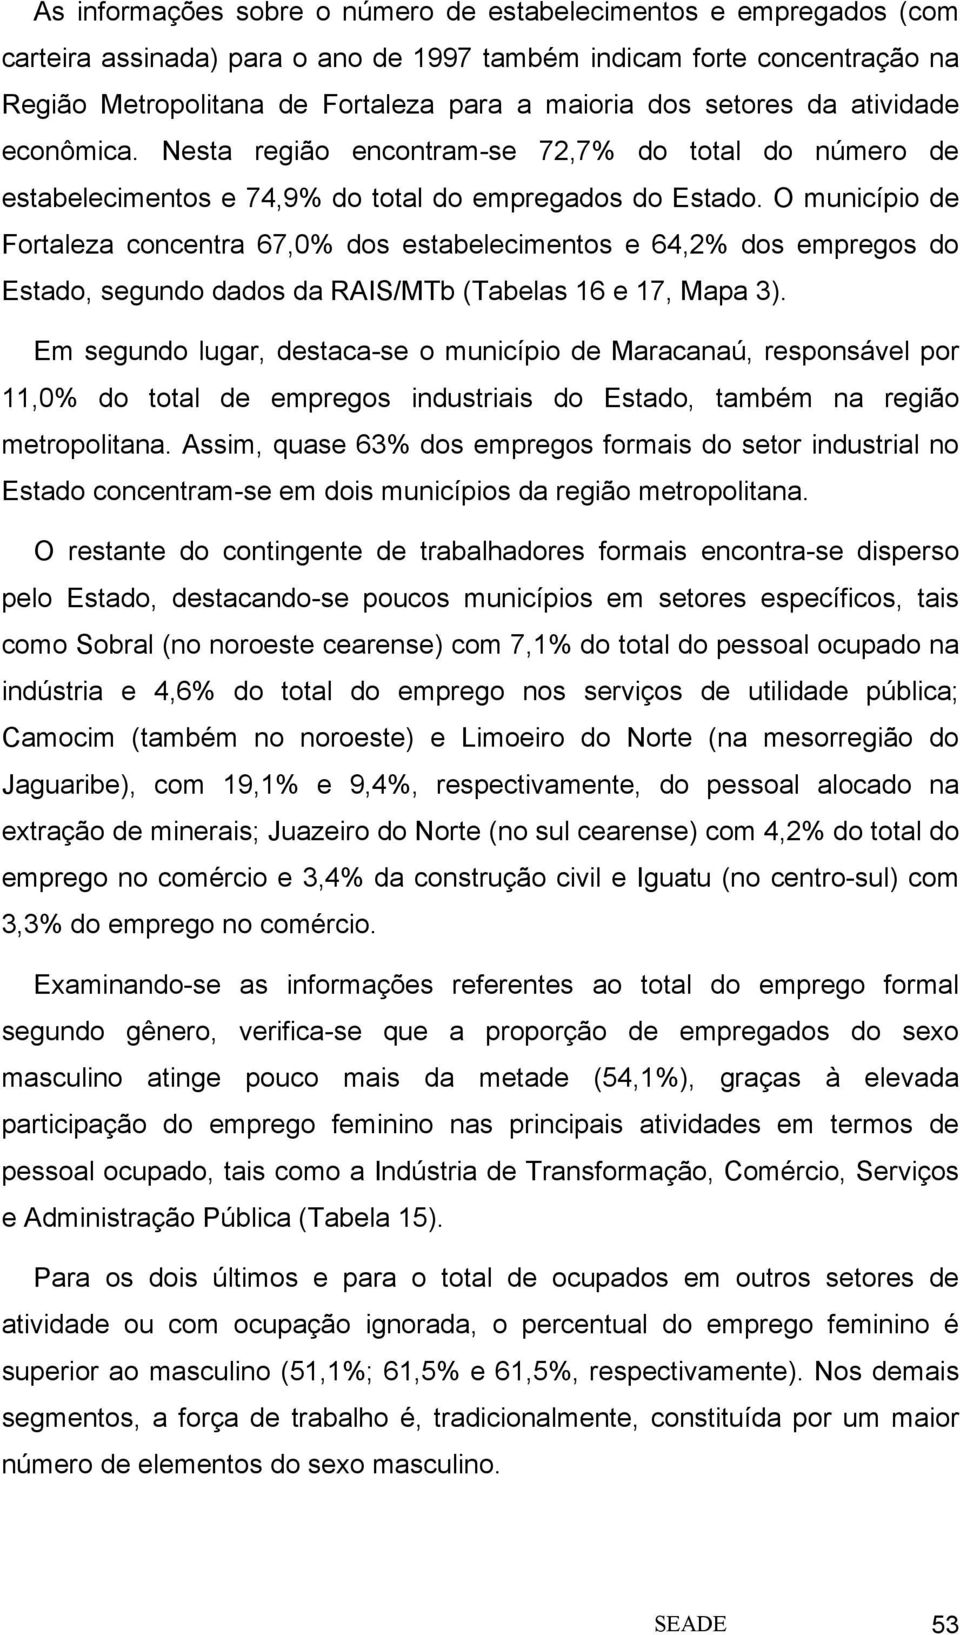 O município de Fortaleza concentra 67,0% dos estabelecimentos e 64,2% dos empregos do Estado, segundo dados da RAIS/MTb (Tabelas 16 e 17, Mapa 3).